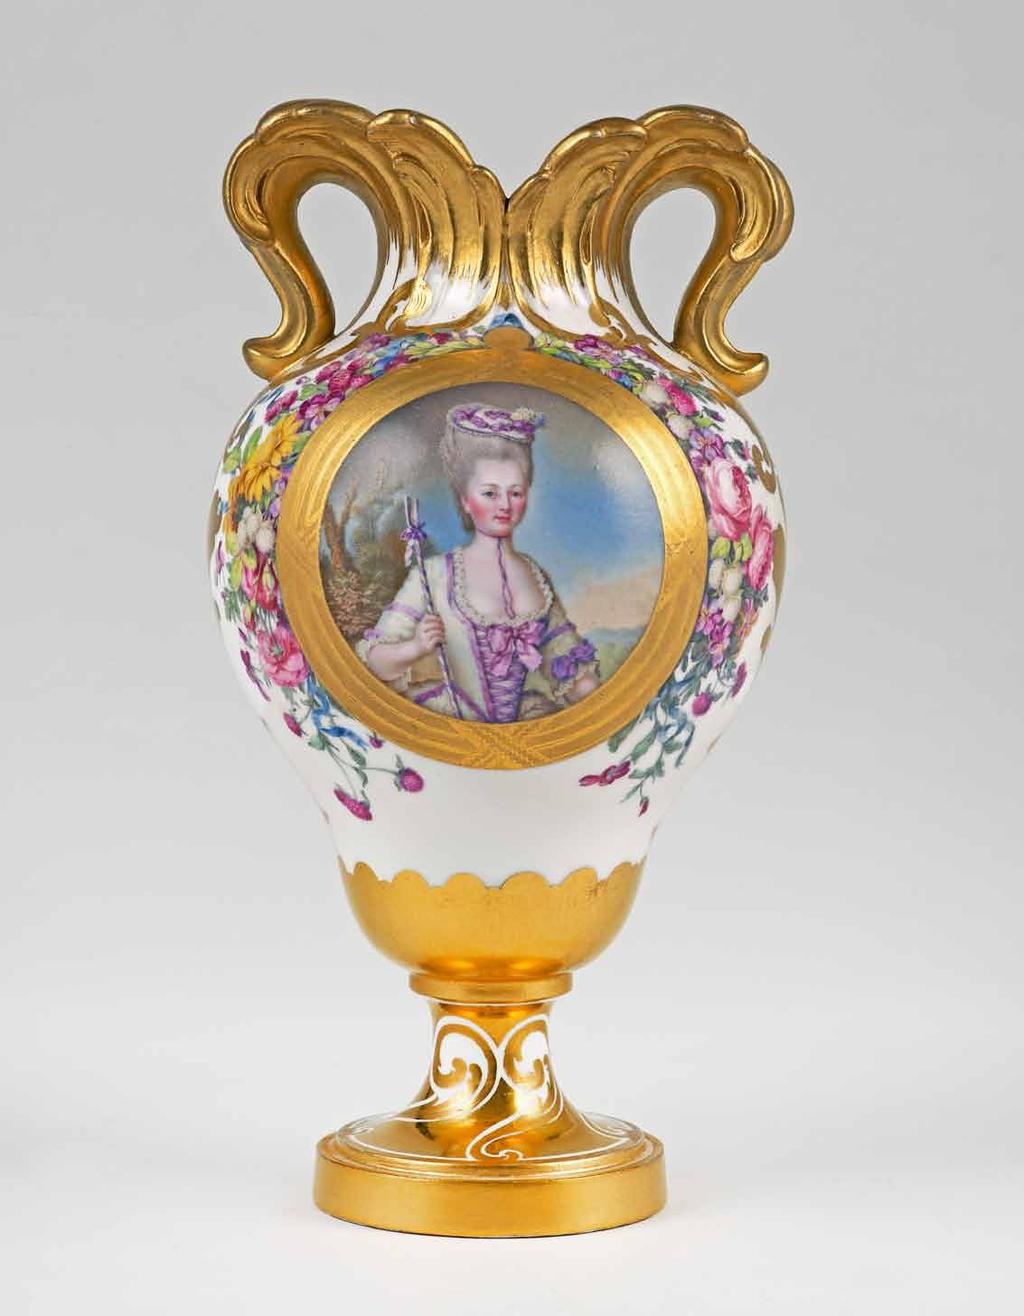 The Sèvres Hard-Paste Porcelain Portrait